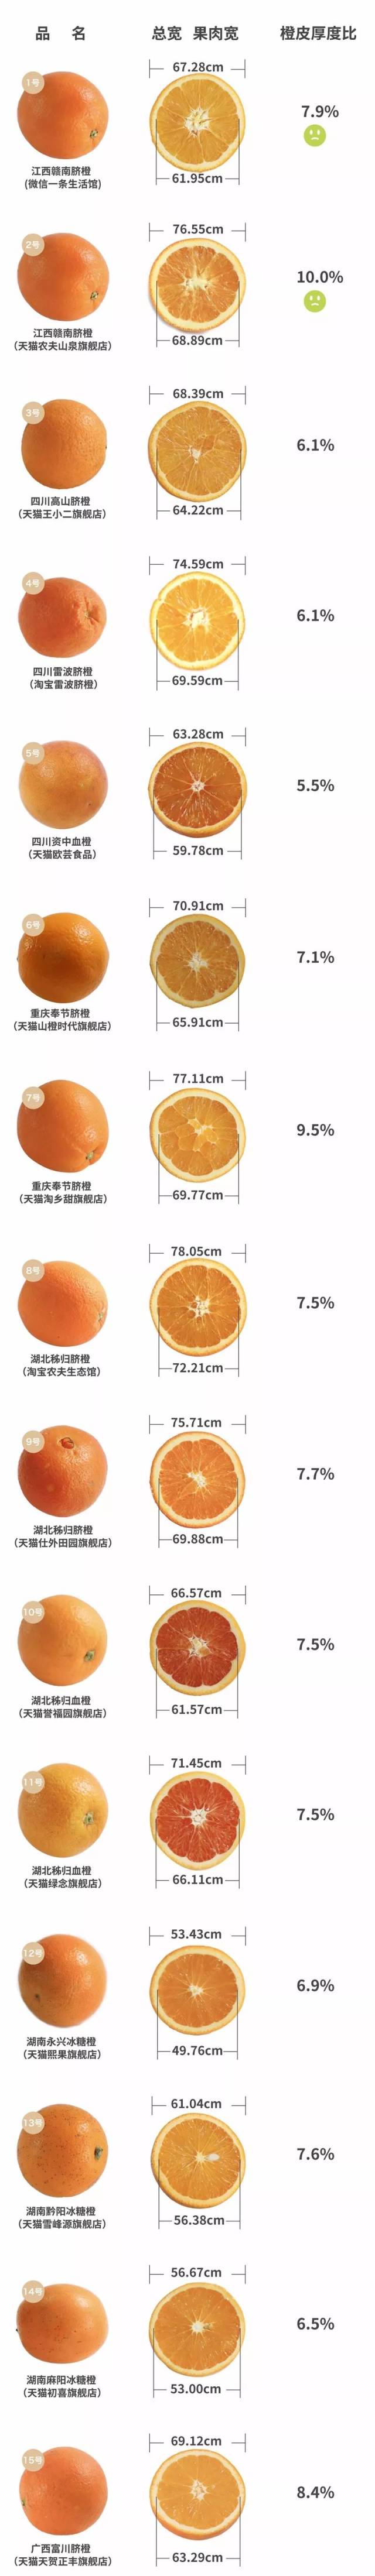 发现一个秘密,皮薄汁儿多的橙子一般都很